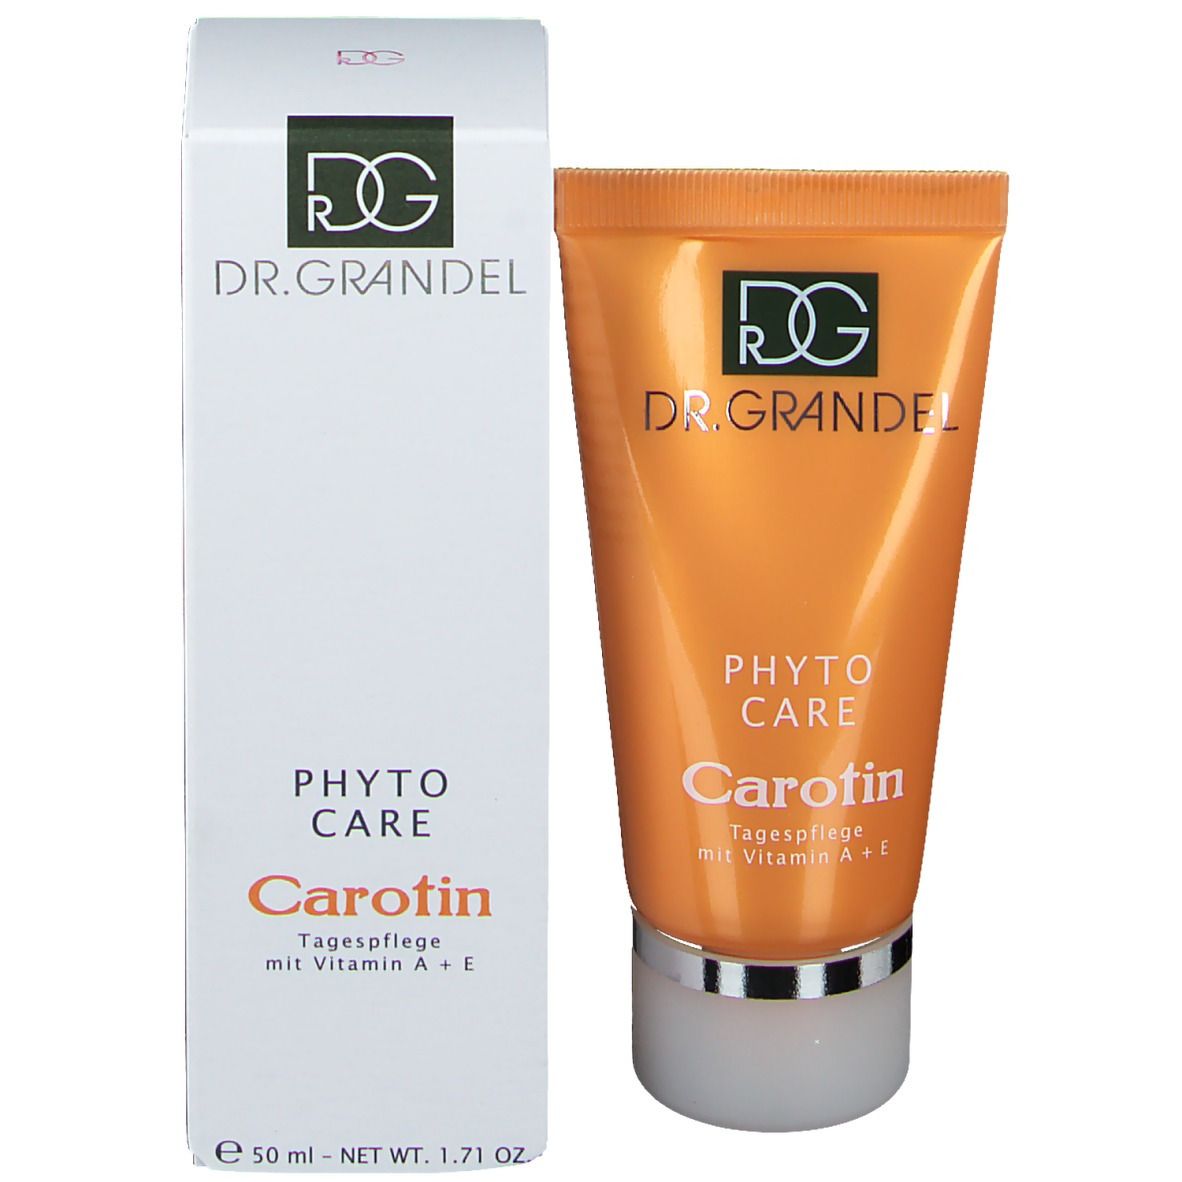 Dr. Grandel Phyto Care Carotin